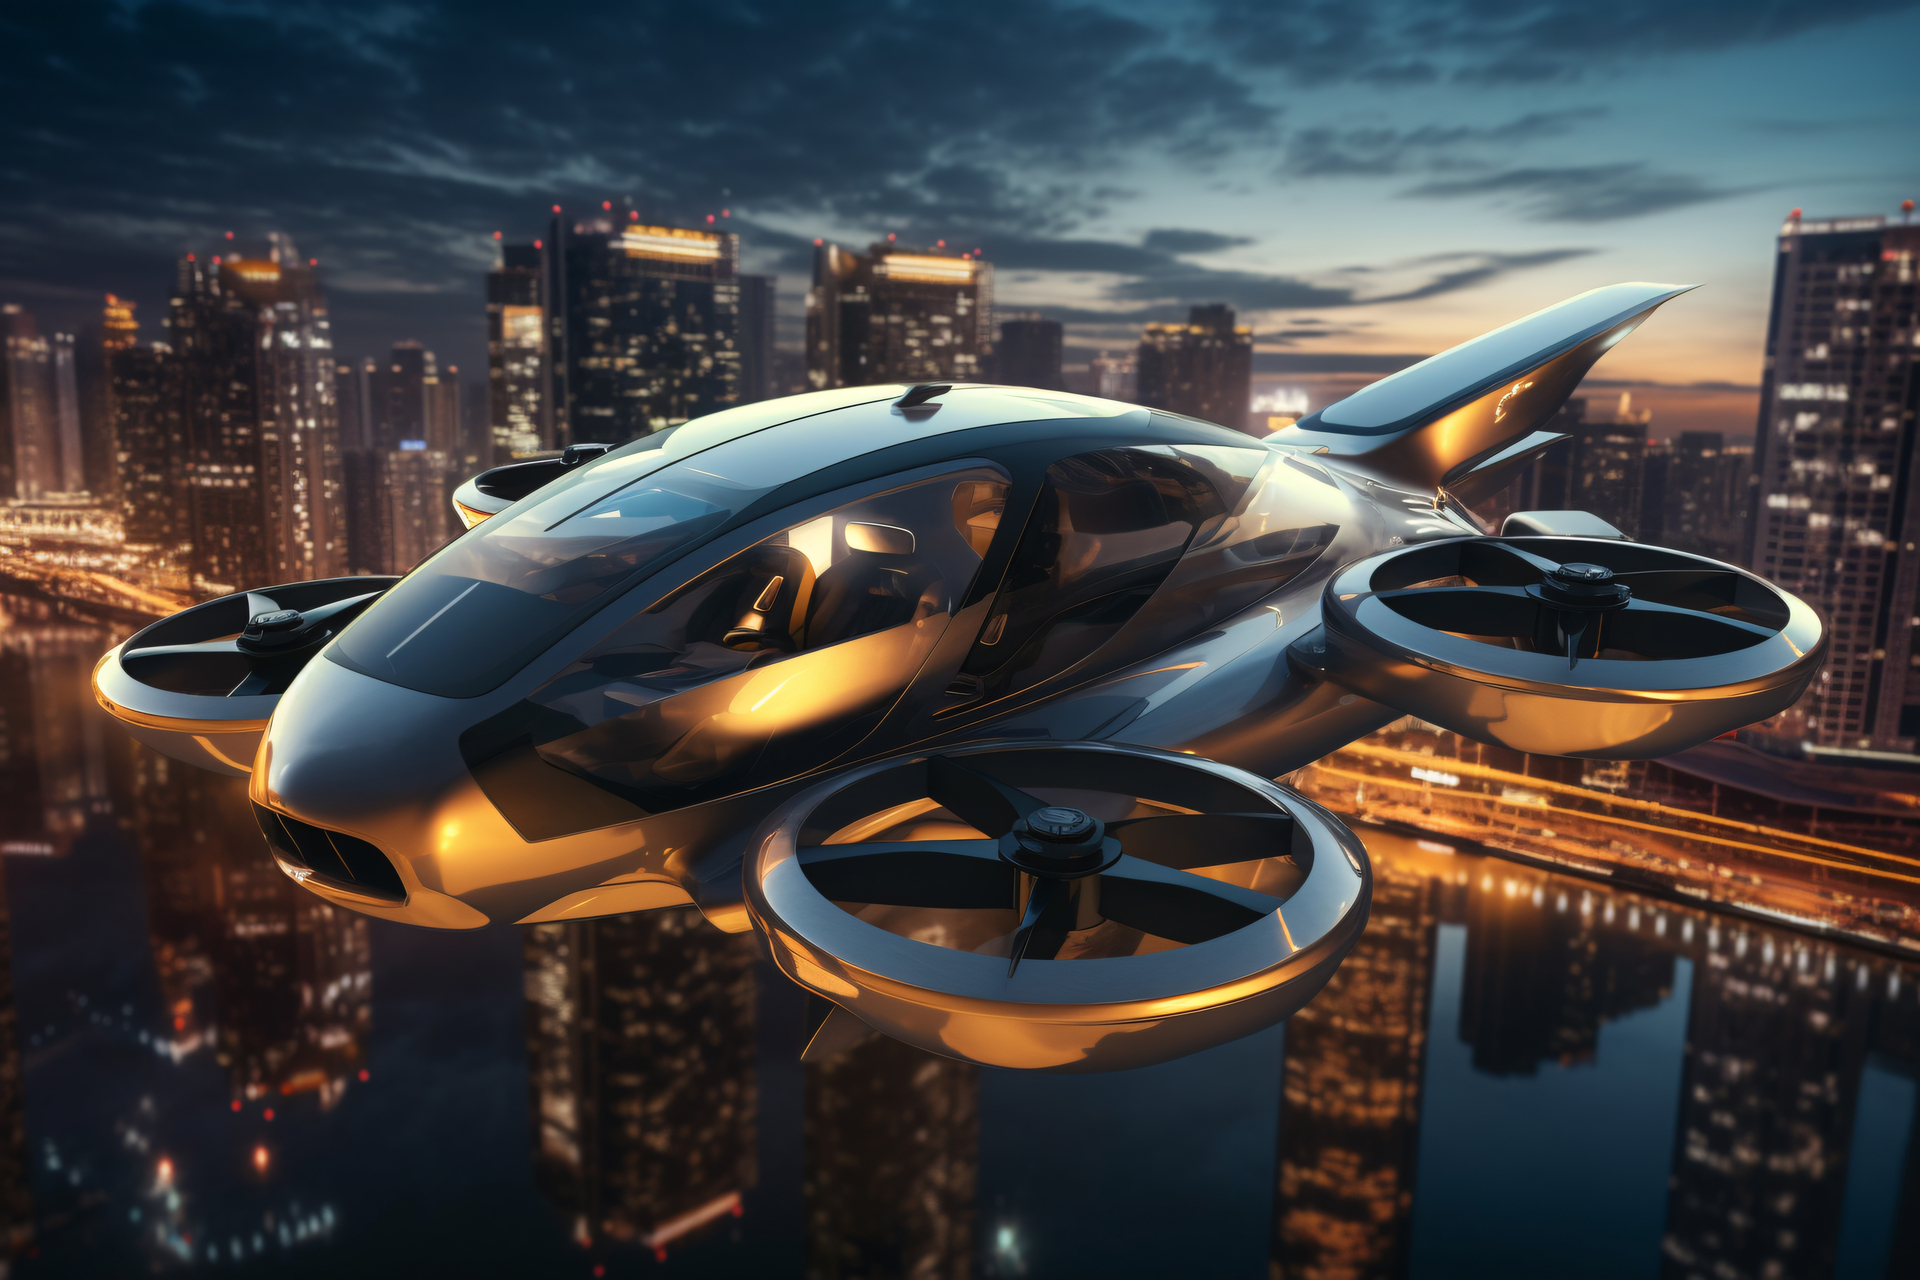 Framtiden är här: Flygande bilar revolutionerar den kinesiska bilindustrin